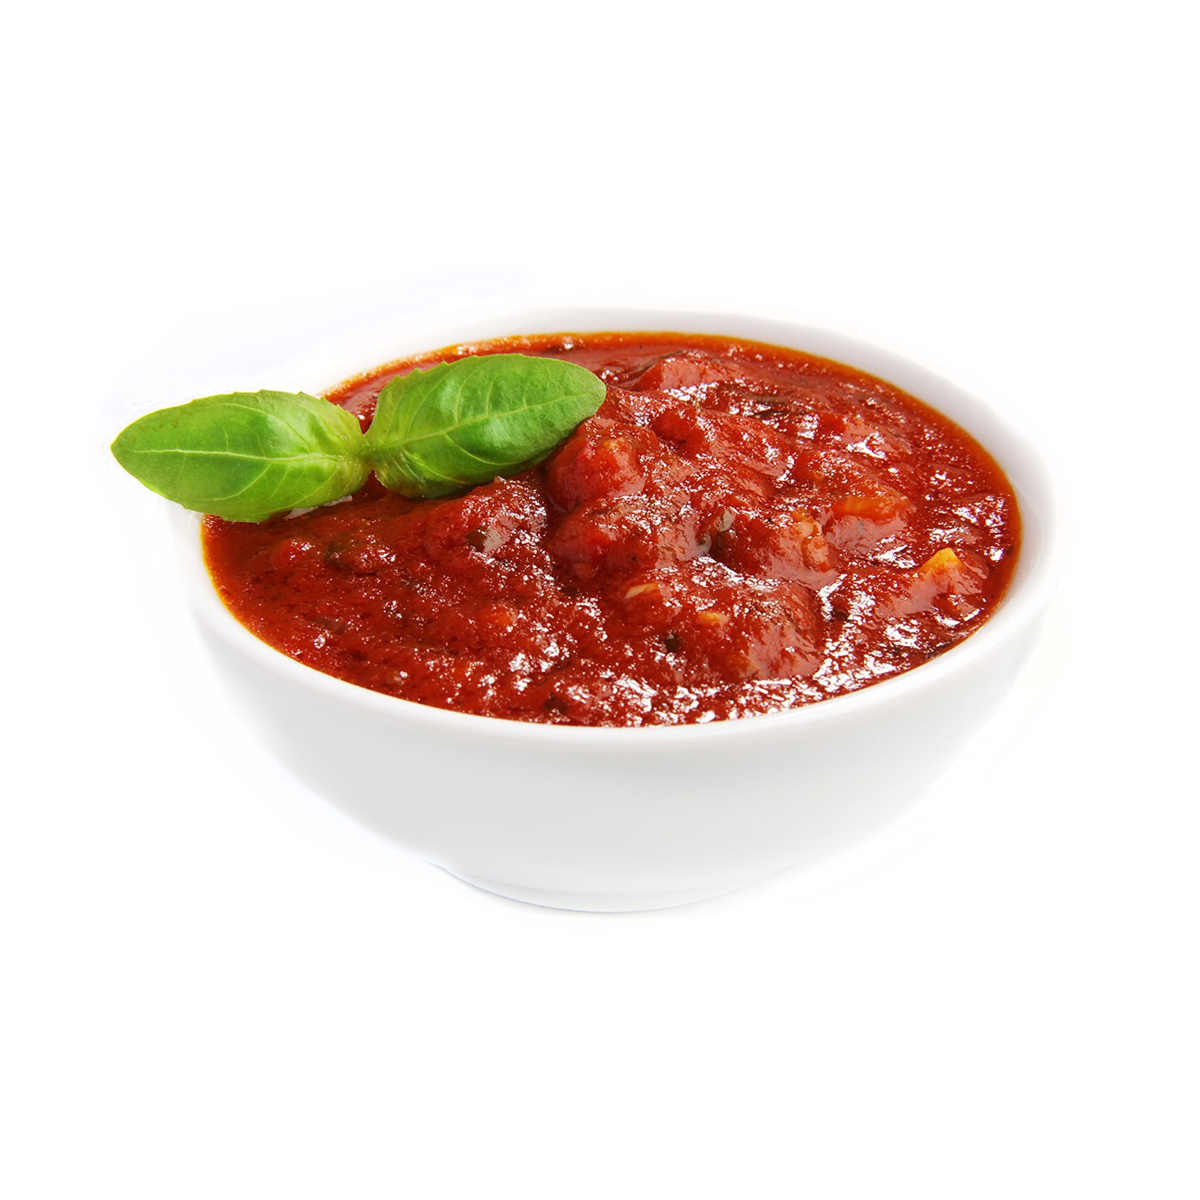 томатный соус с базиликом для пиццы фото 115